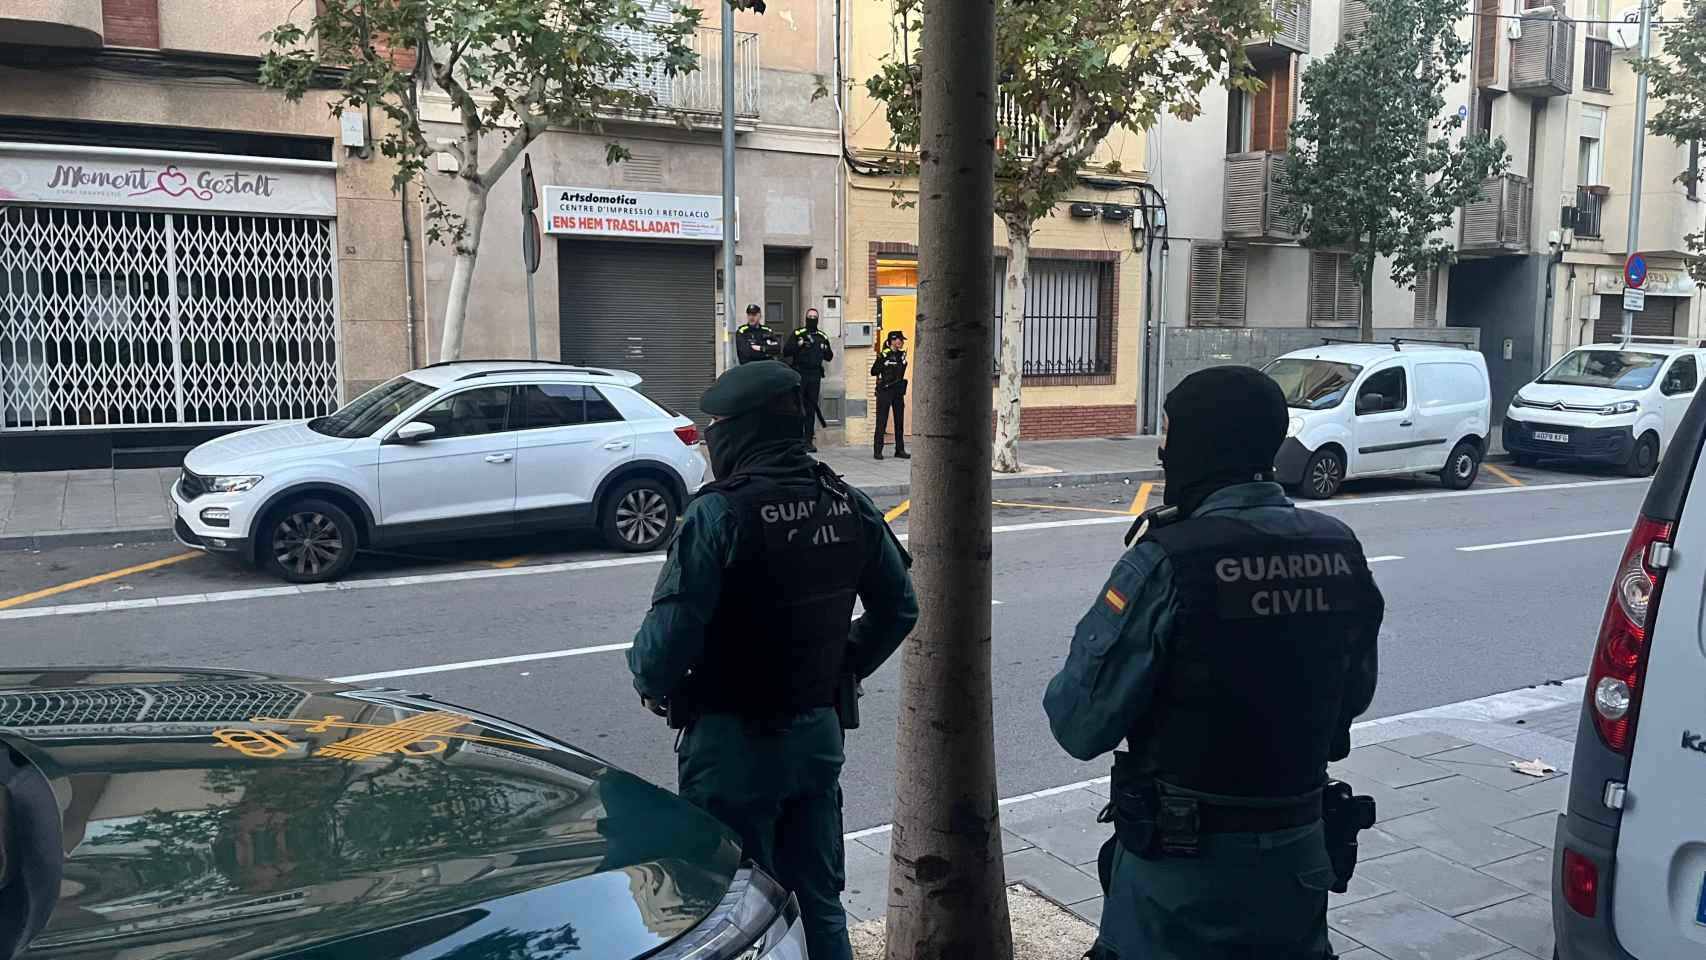 La Guardia Civil ha detenido a ocho personas en Barcelona y Tarragona en un operativo policial contra un presunto grupo criminal dedicado al tráfico de drogas y armas